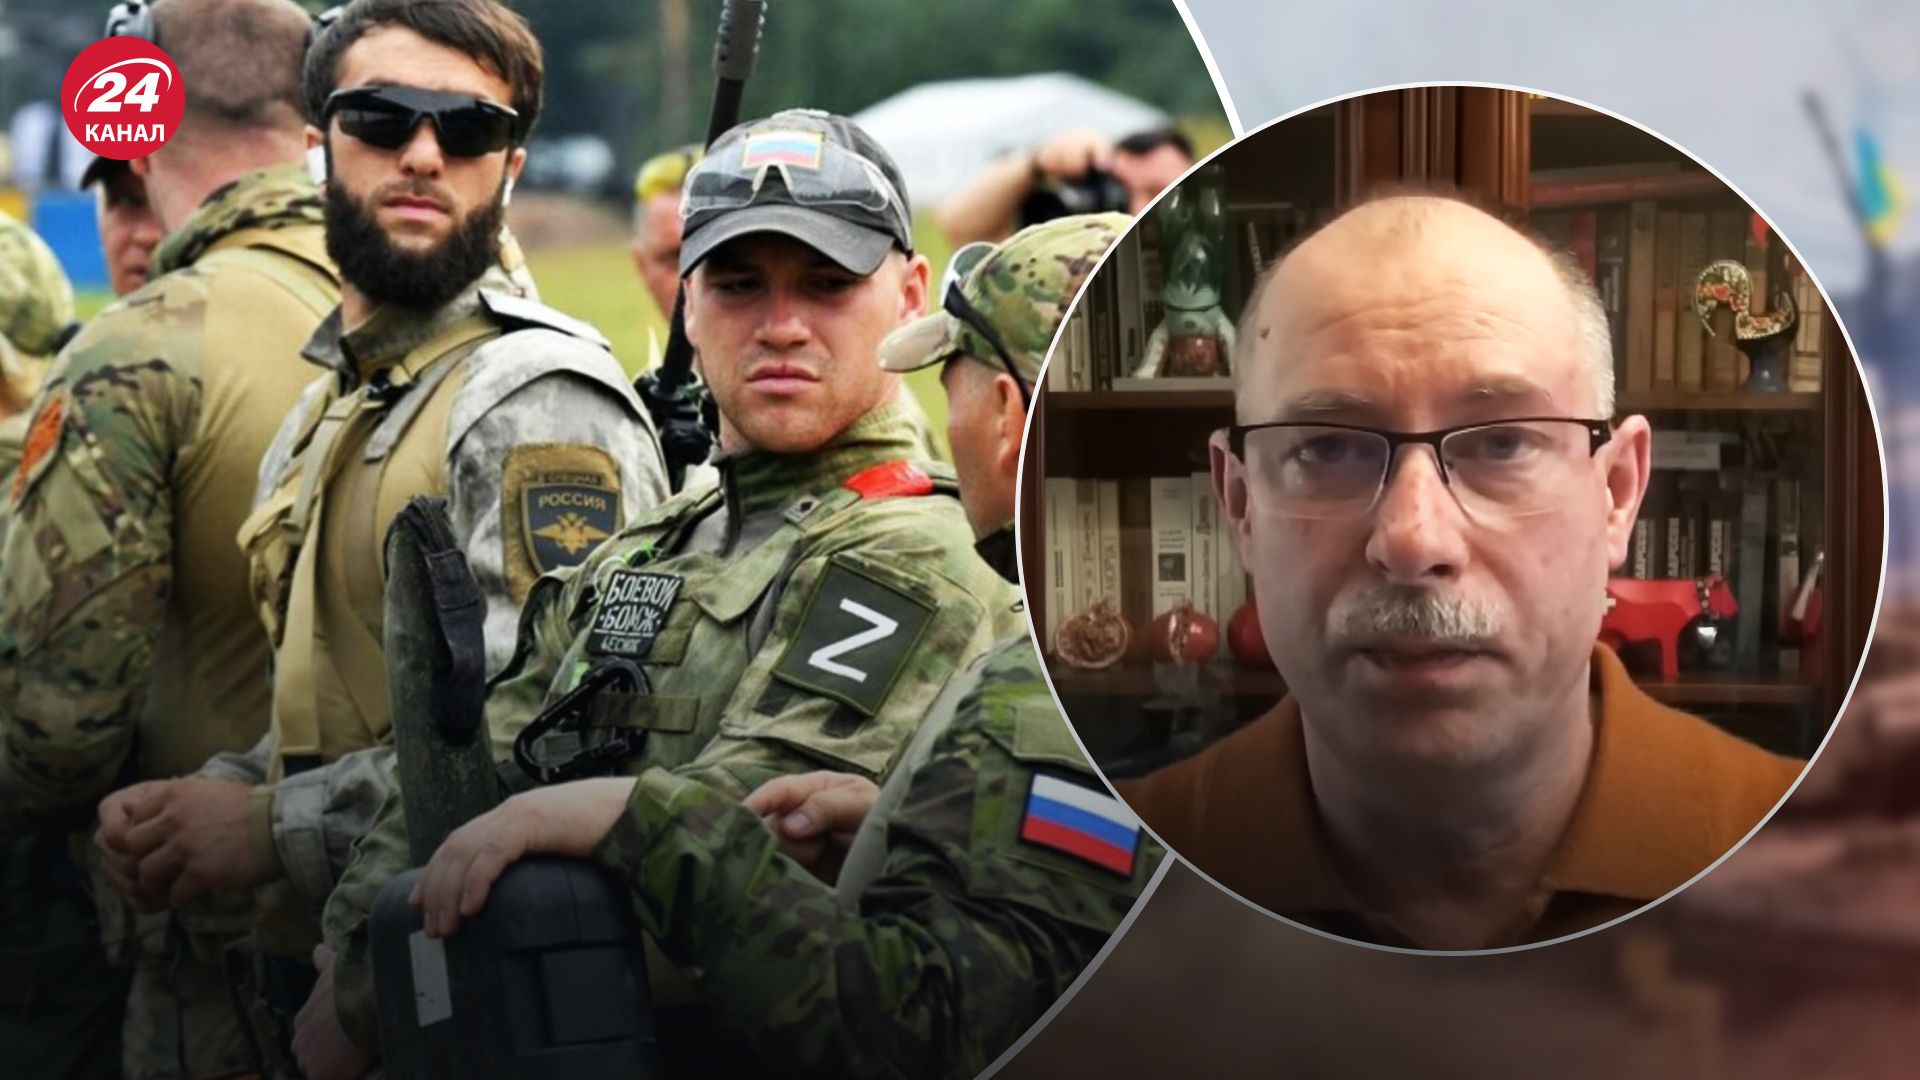 Видео казни украинского пленного демонстрирует, кто такие россияне